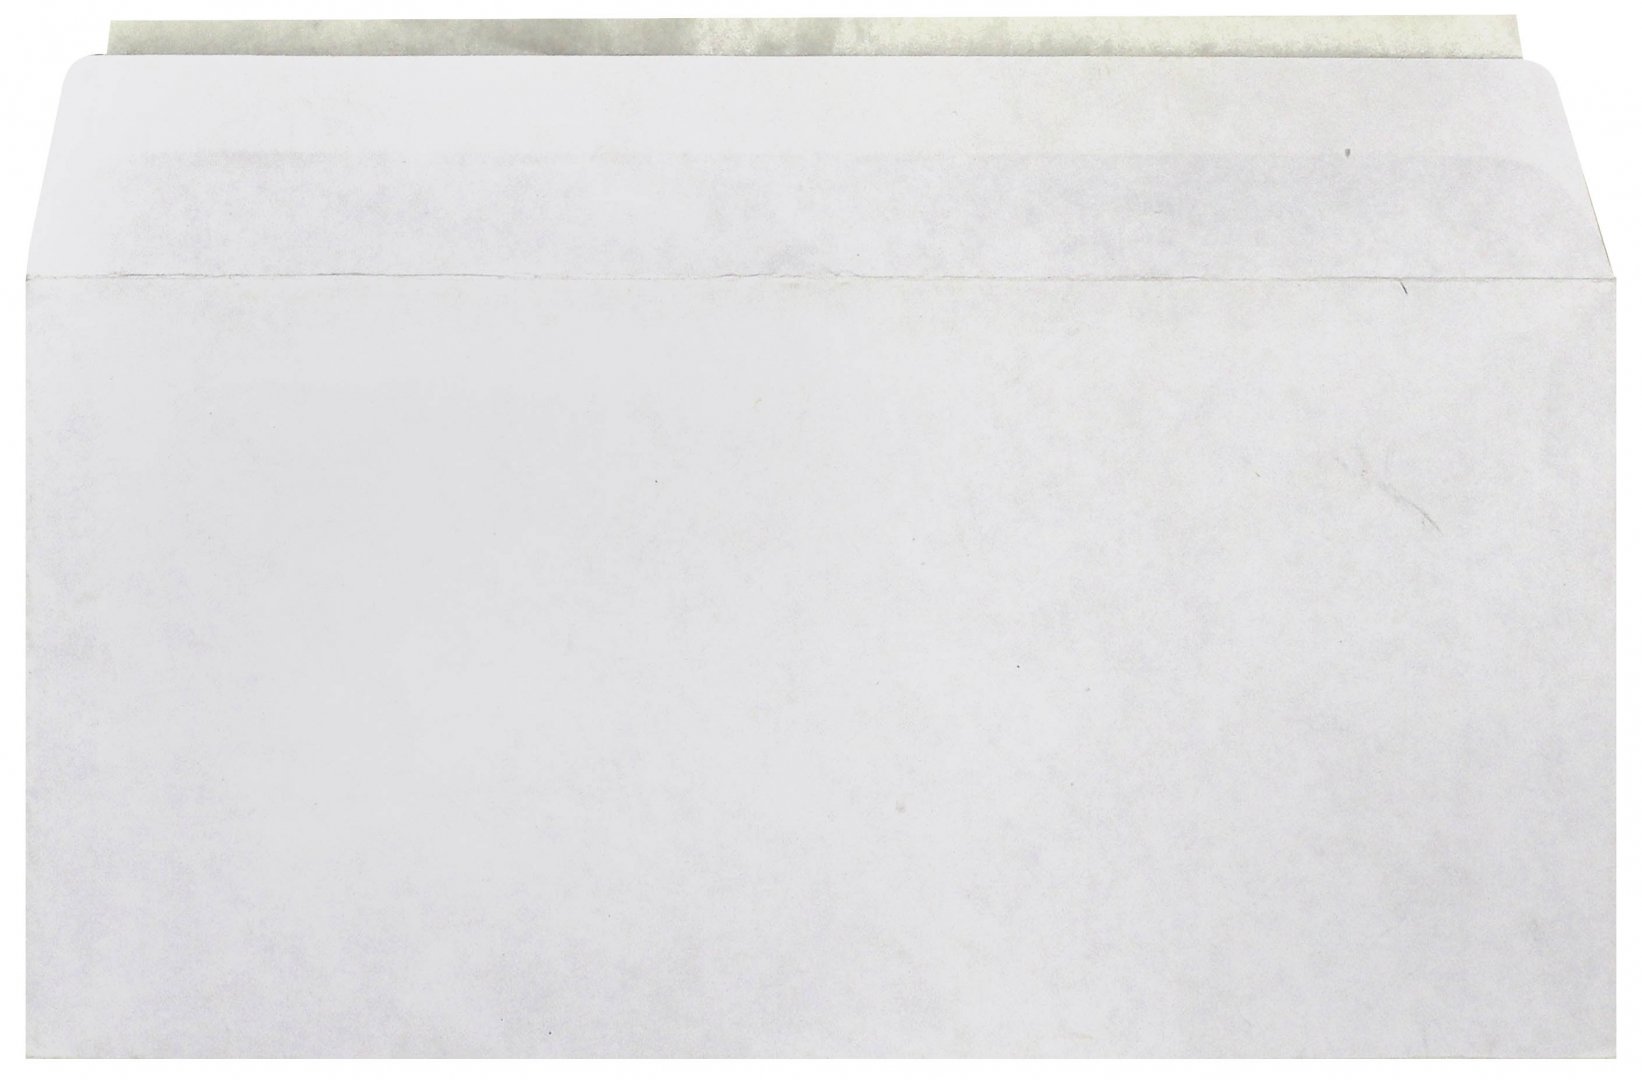 Иллюстрация 1 из 4 для Конверт почтовый DL, 110х220 мм, белая бумага (DL HKP) | Лабиринт - канцтовы. Источник: Лабиринт